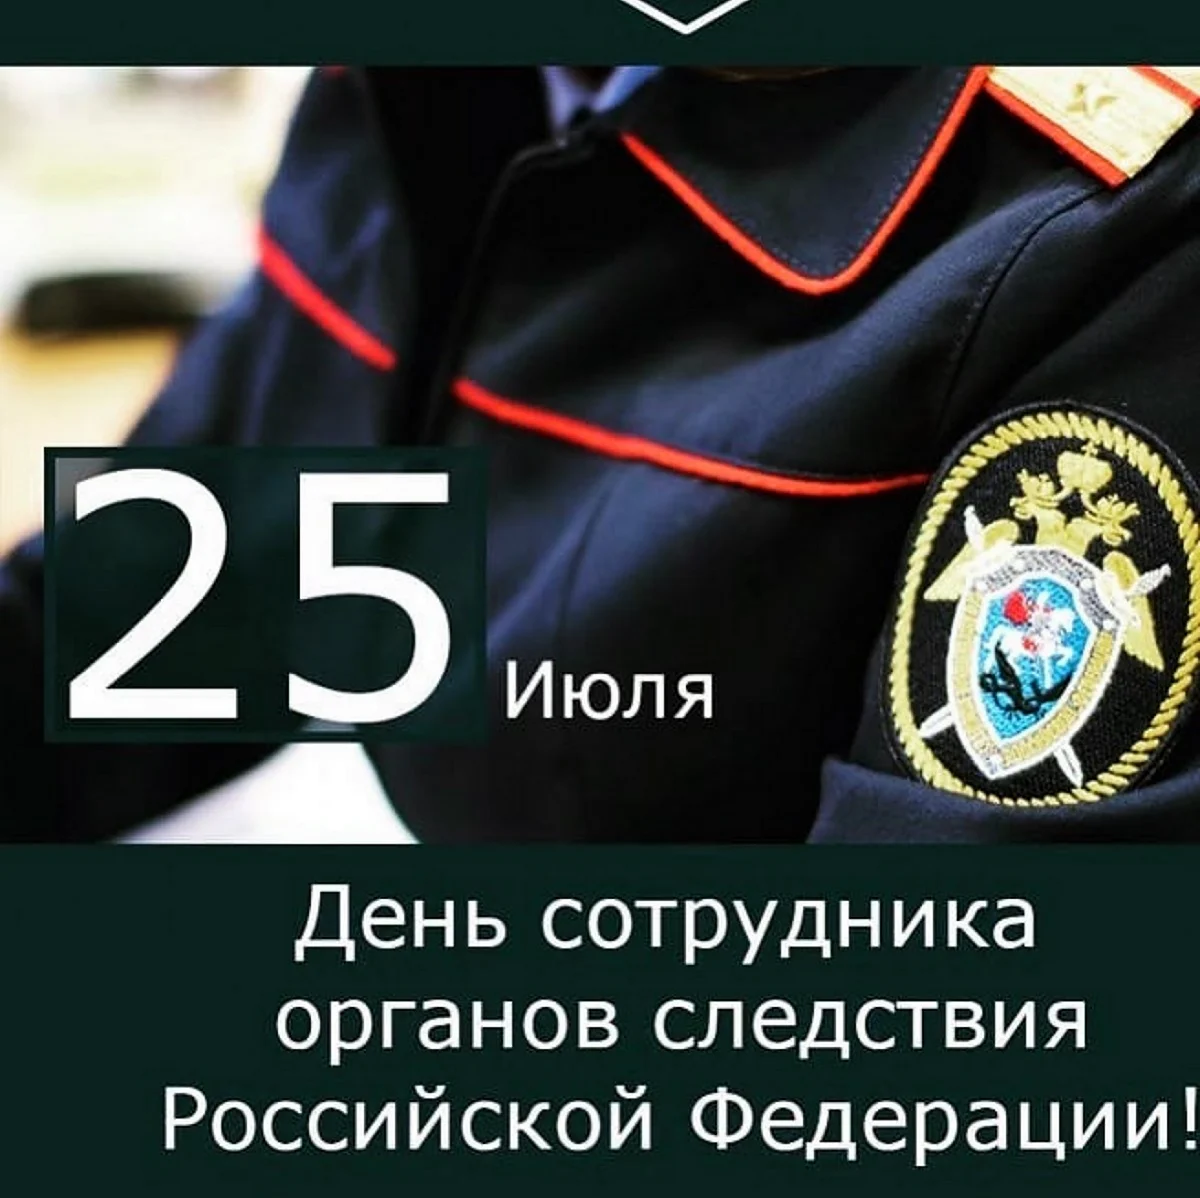 25 Июля день сотрудника органов следствия Российской Федерации. Поздравление